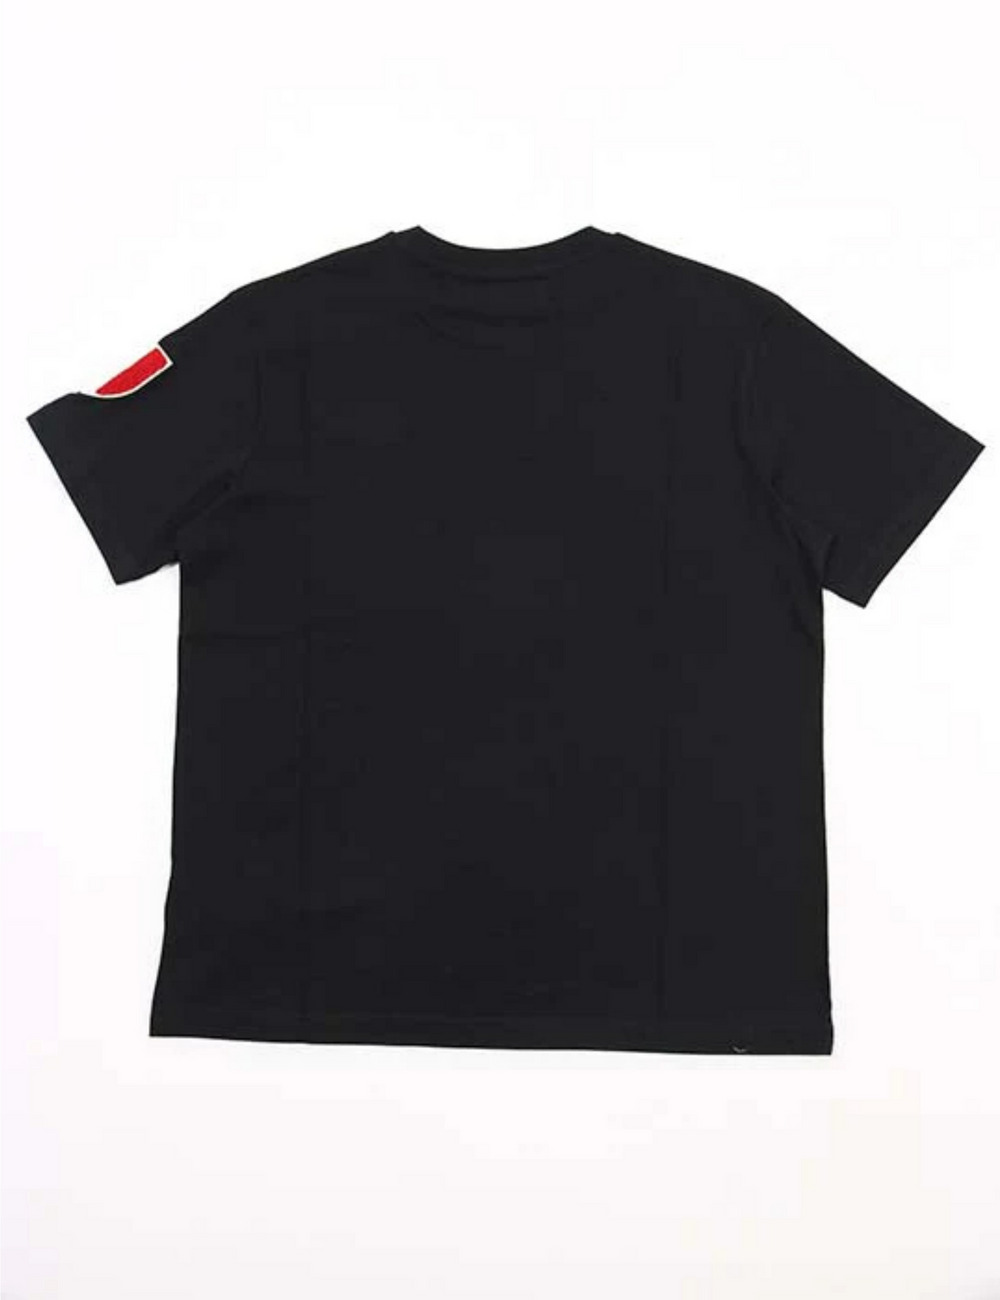 シールドTシャツ(半袖) / SHIELD T SHIRT 詳細画像 ブラック 2